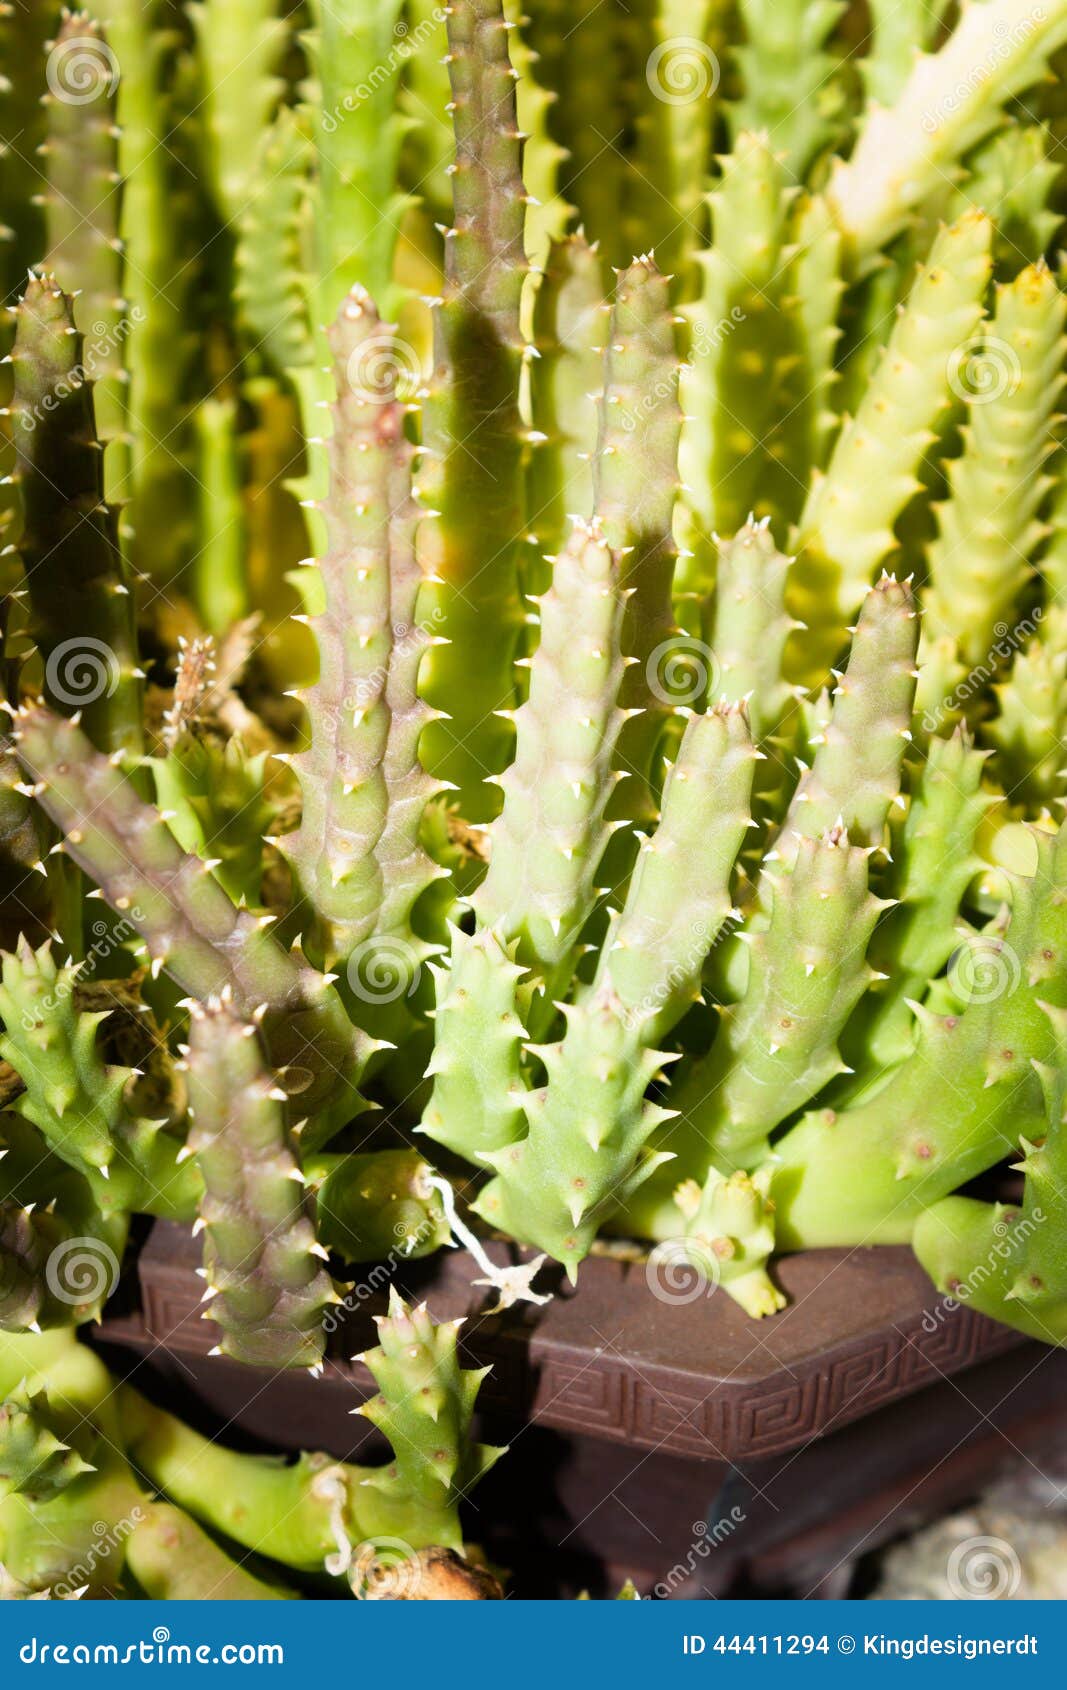 Dit beeld werd genomen binnen xiamen botanische tuin, China Succulents één van de installaties groeit in de woestijnen Zij kunnen heel wat water in hun bladeren en stammen opslaan Wat van hen als rotsen of kiezelstenen en wat kunnen thire kleur volgens de omgeving veranderen waarop zij groeien, kunnen elk van deze eigenschappen hen helpen om van dieren te ontsnappen